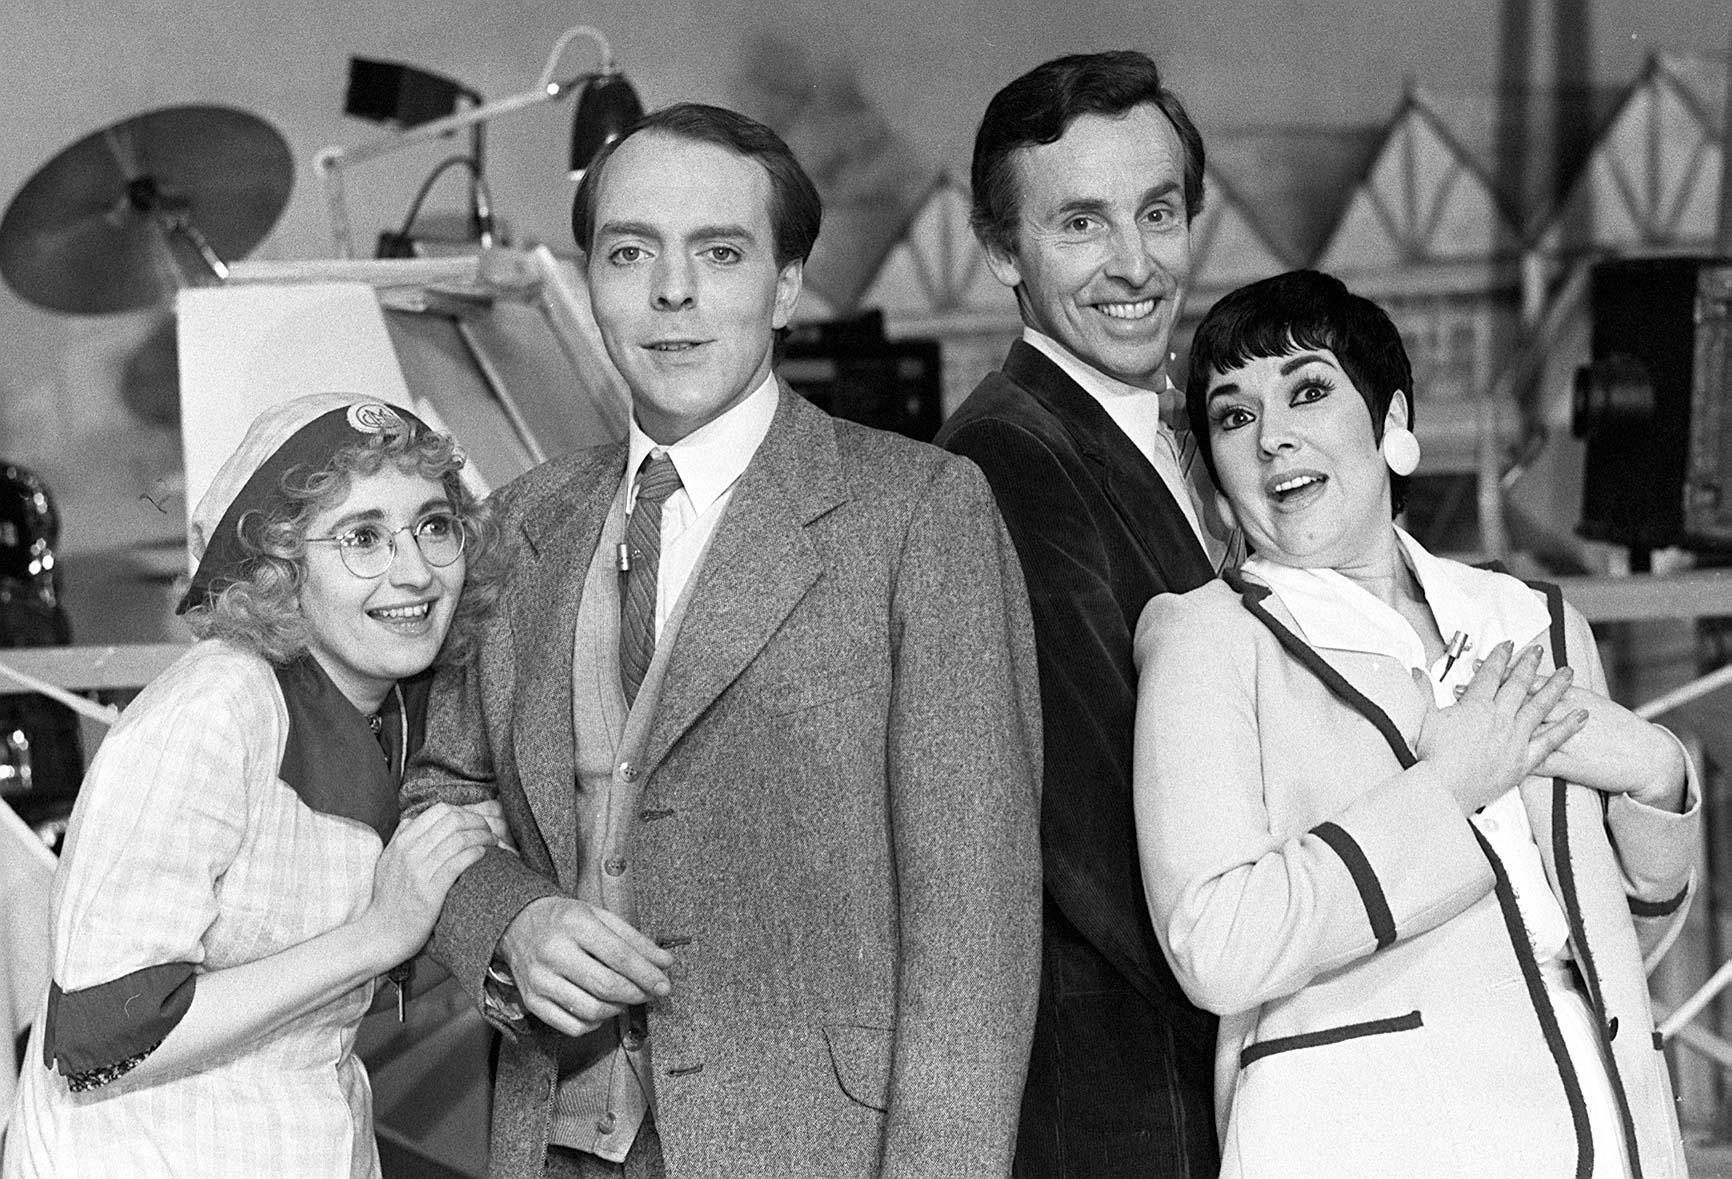 Su Pollard, Simon Cadell, Michael Knowles and Ruth Madoc, starred in the BBC one comedy Hi-de-Hi! 